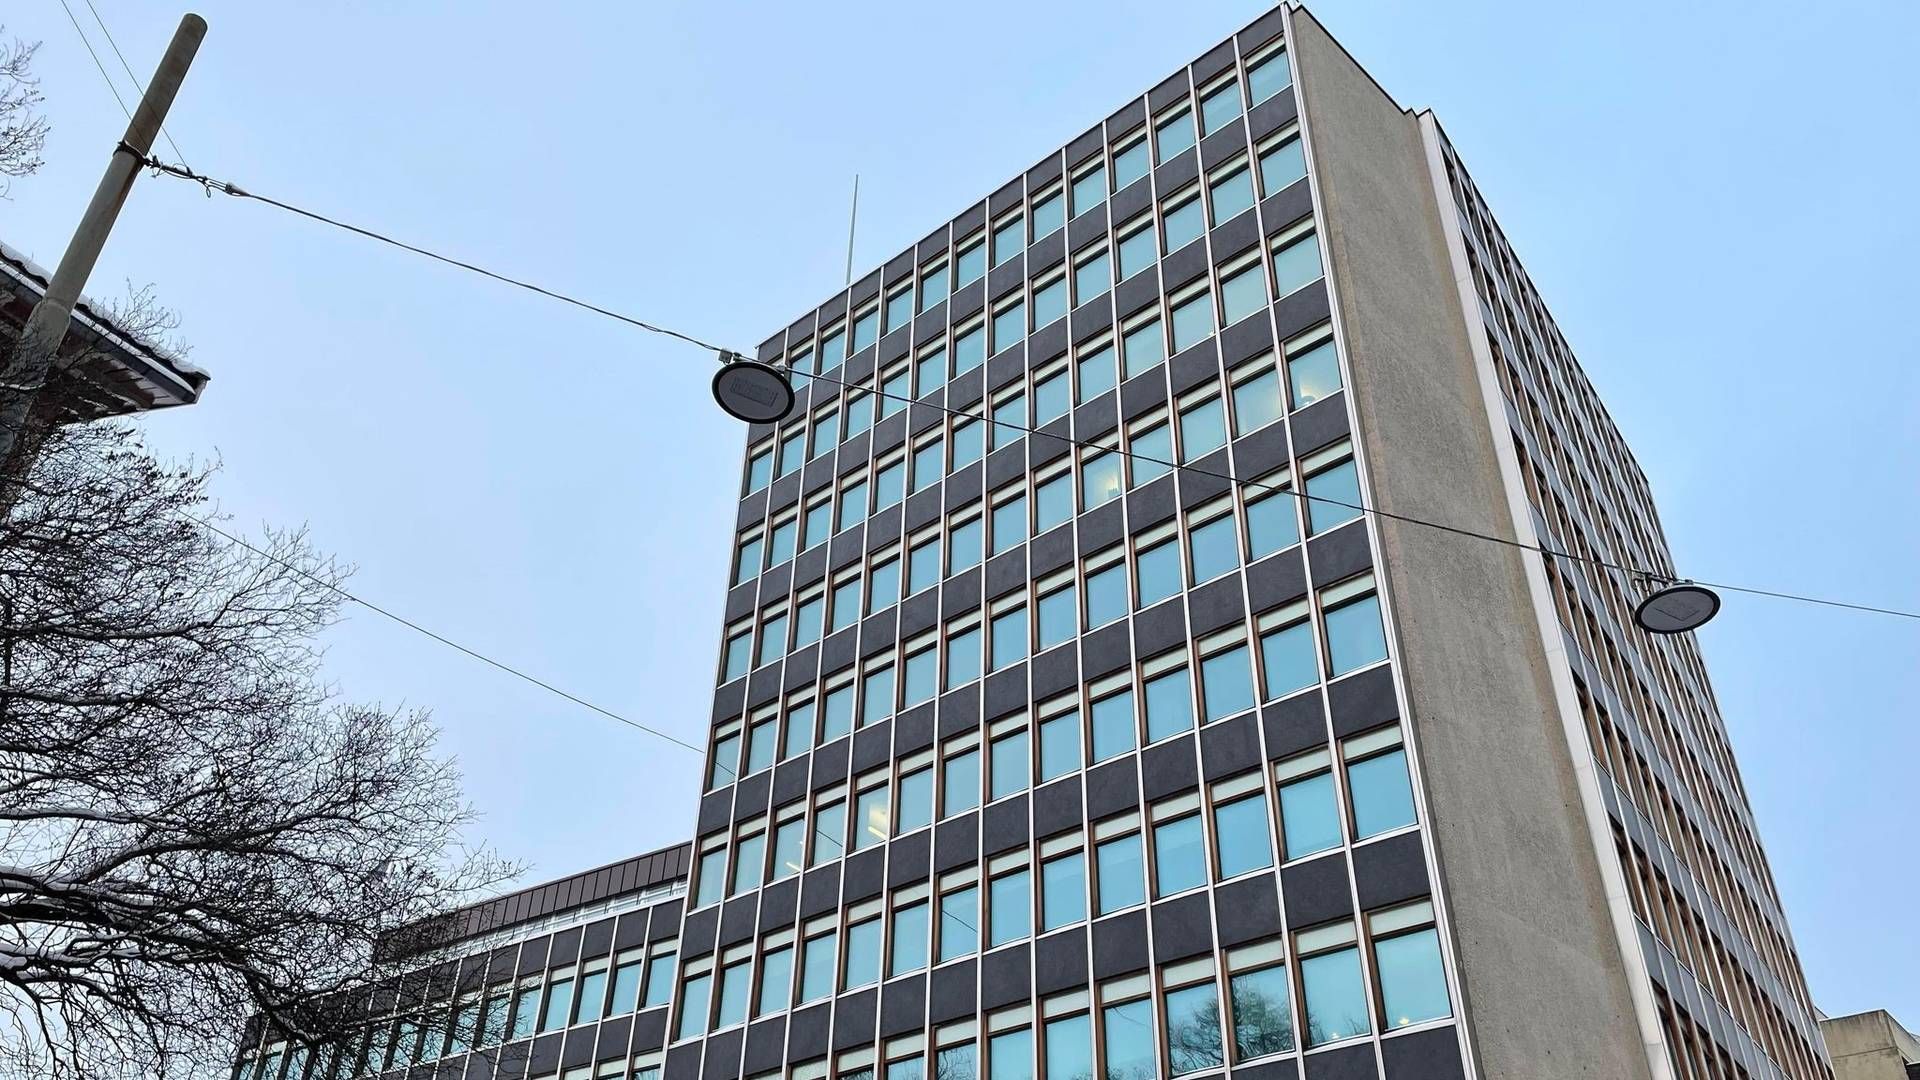 Ryger Advokatfirma (tidligere Hammervoll Pind og Pind) har kontorer i 10. og 11. etasje i dette bygget i Wergelandsveien i Oslo. | Foto: Stian Olsen / AdvokatWatch